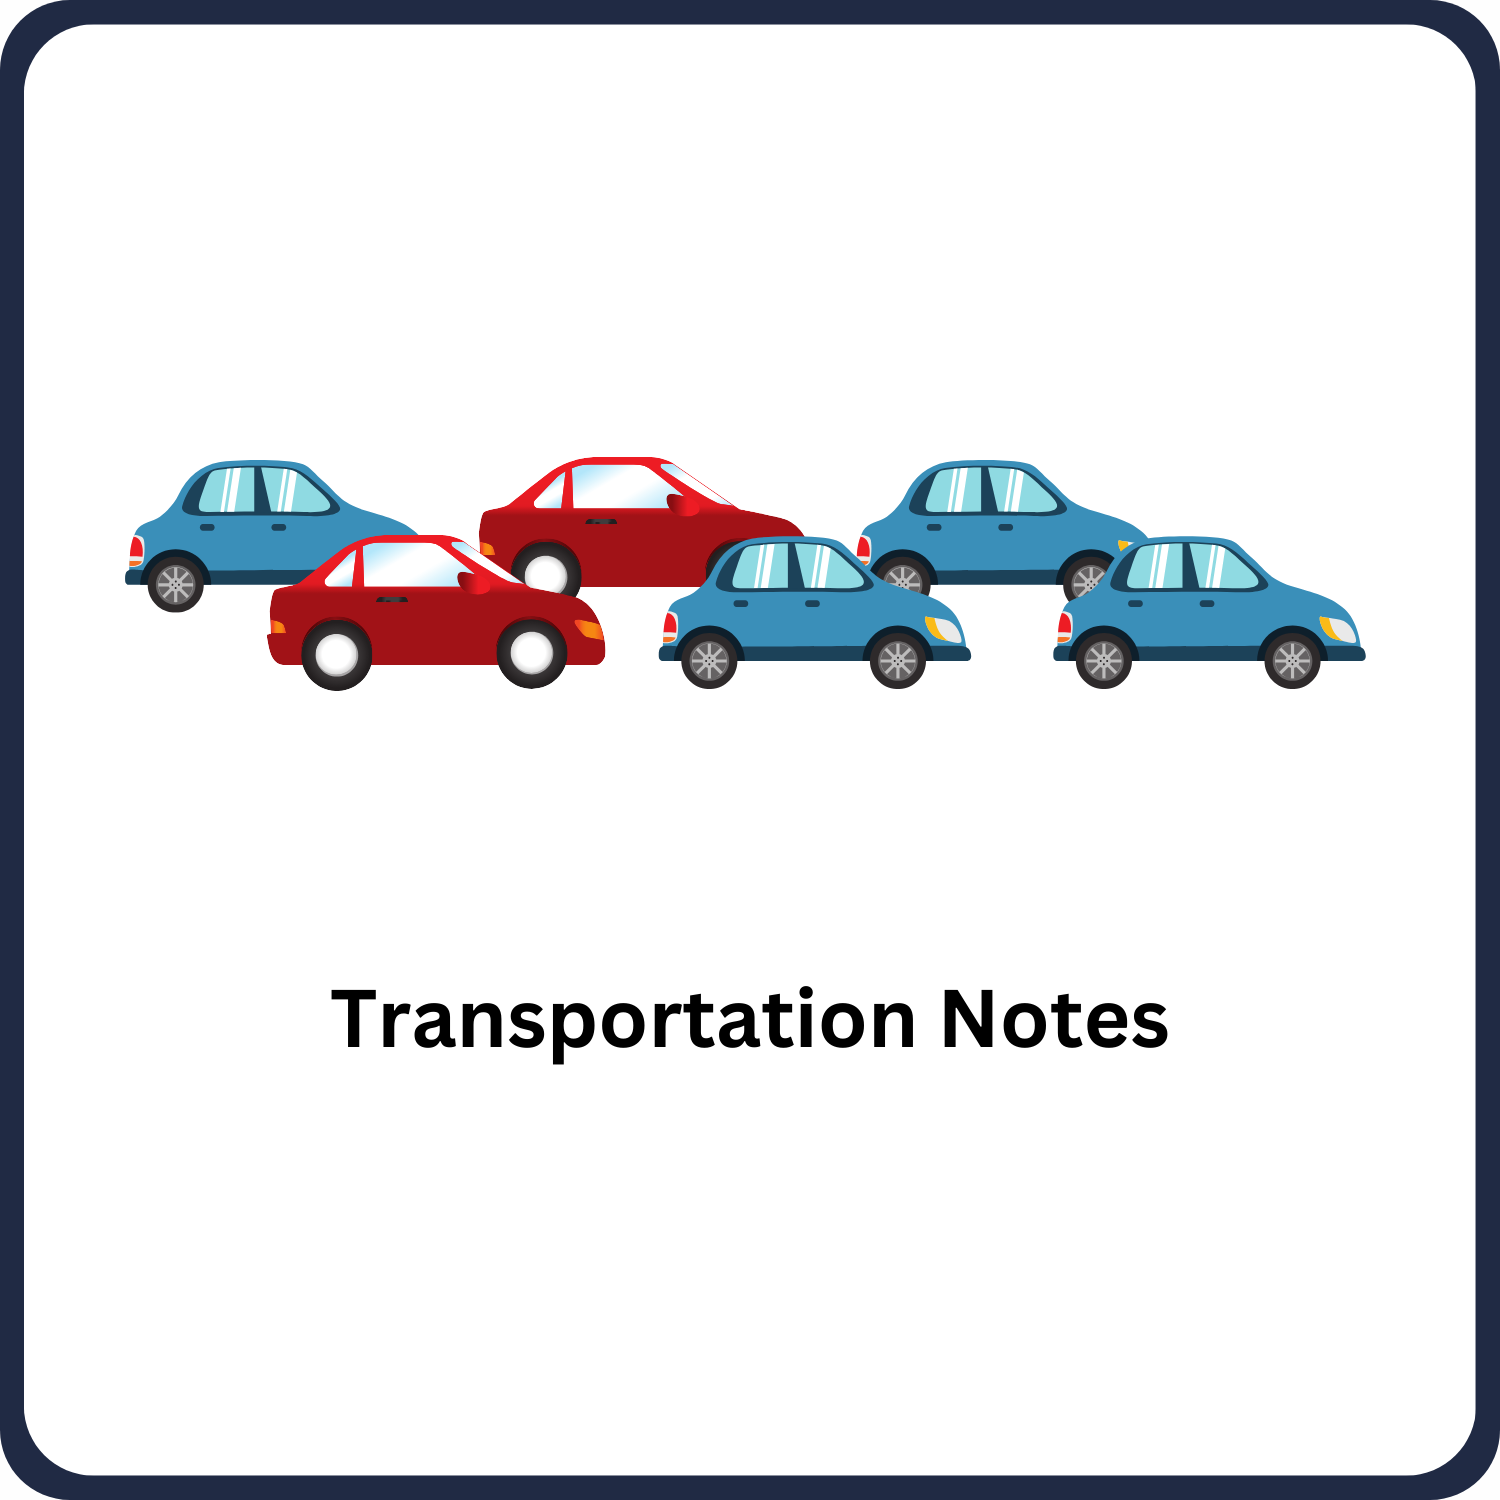 Transportation Notes